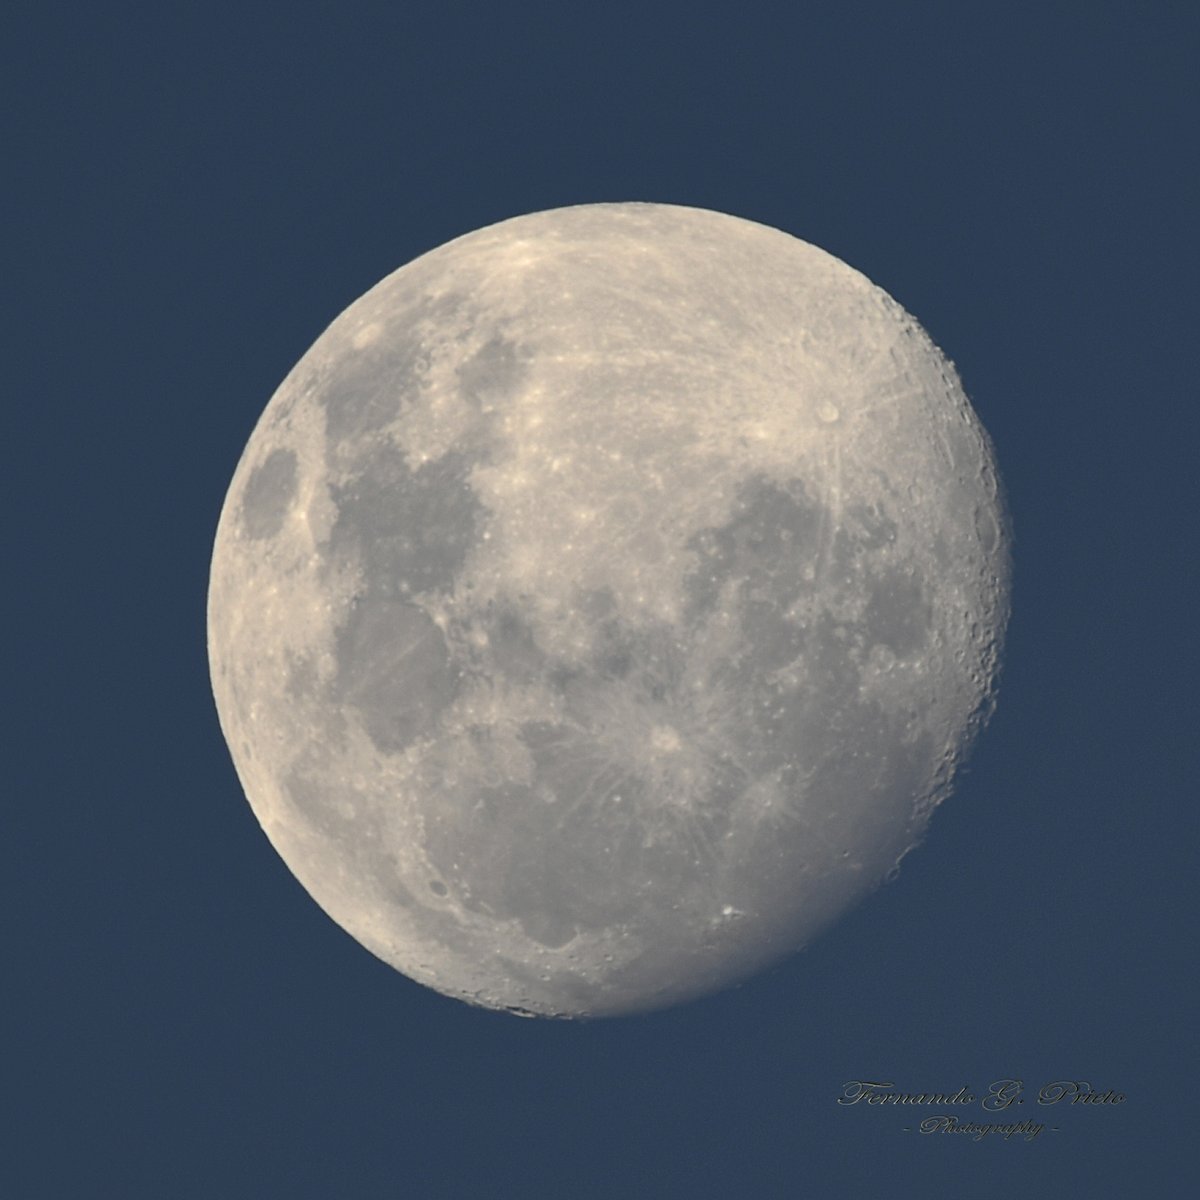 Así está Ella al anochecer... 😍🌔📷 🇦🇷
#Luna #Astronomia #Moonhour #MoonLovers